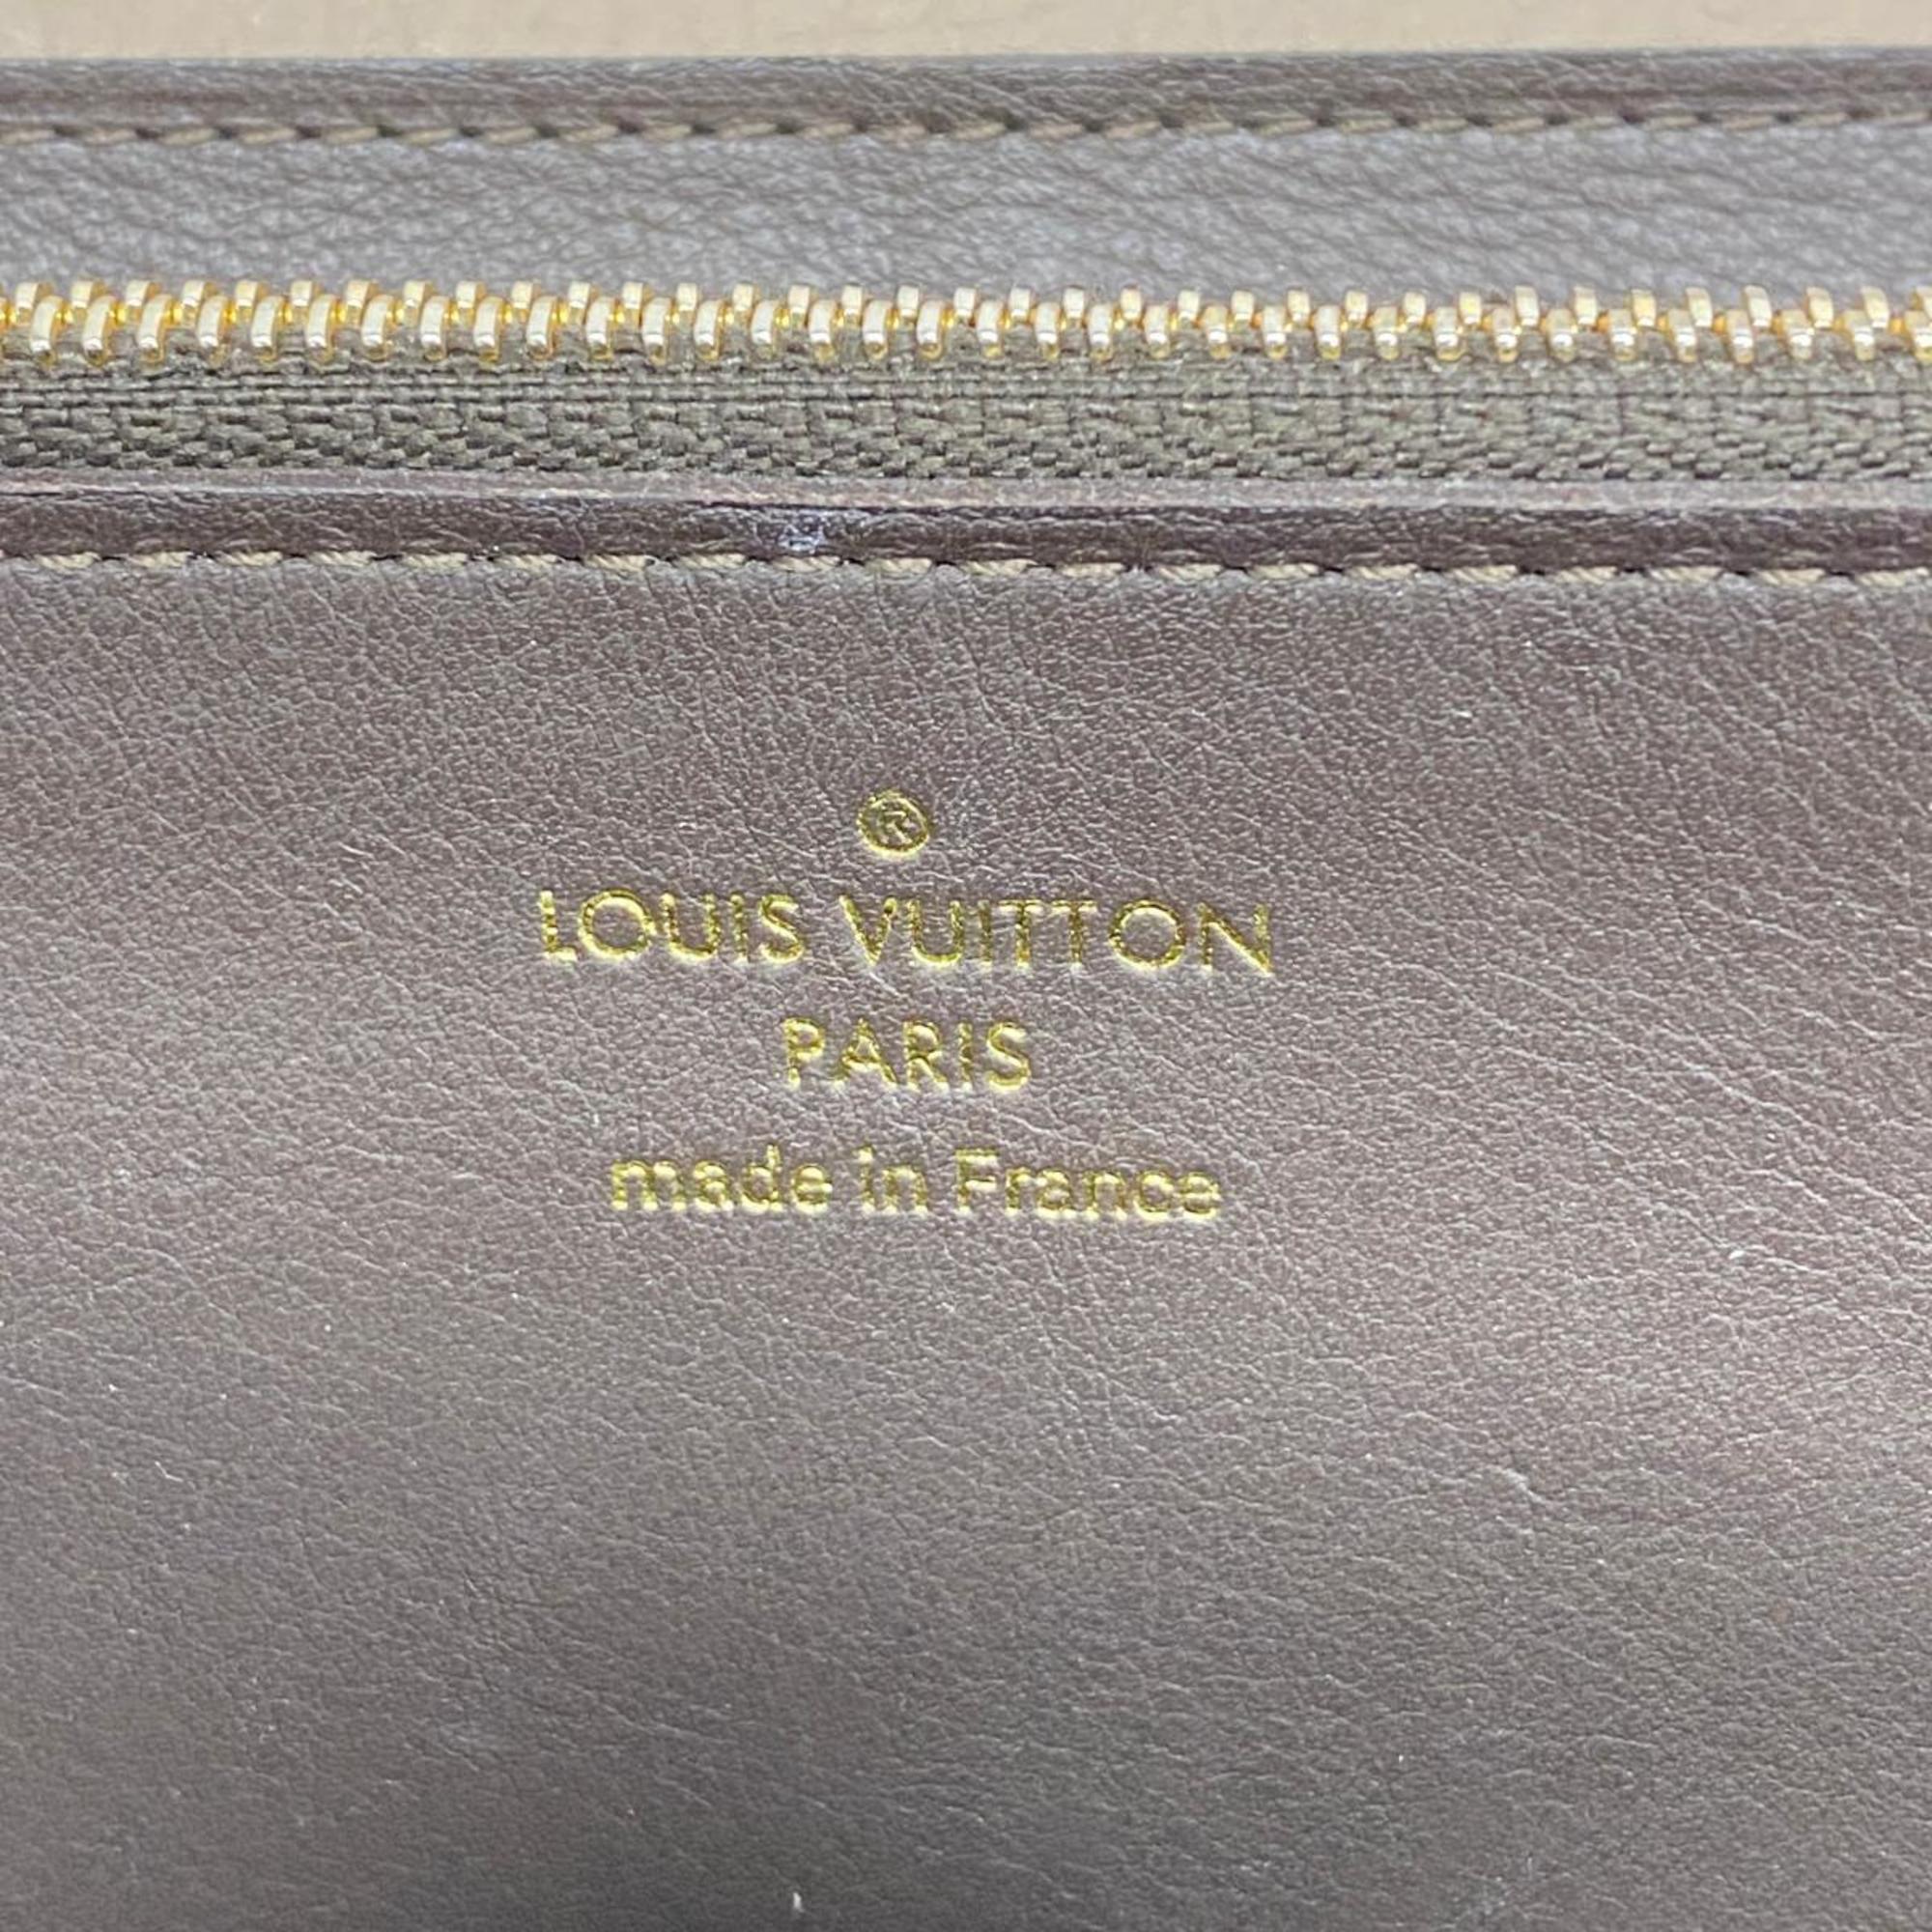 ルイ・ヴィトン(Louis Vuitton) ルイ・ヴィトン 長財布 ポルトフォイユカプシーヌ M61249 ガレメンズ レディース